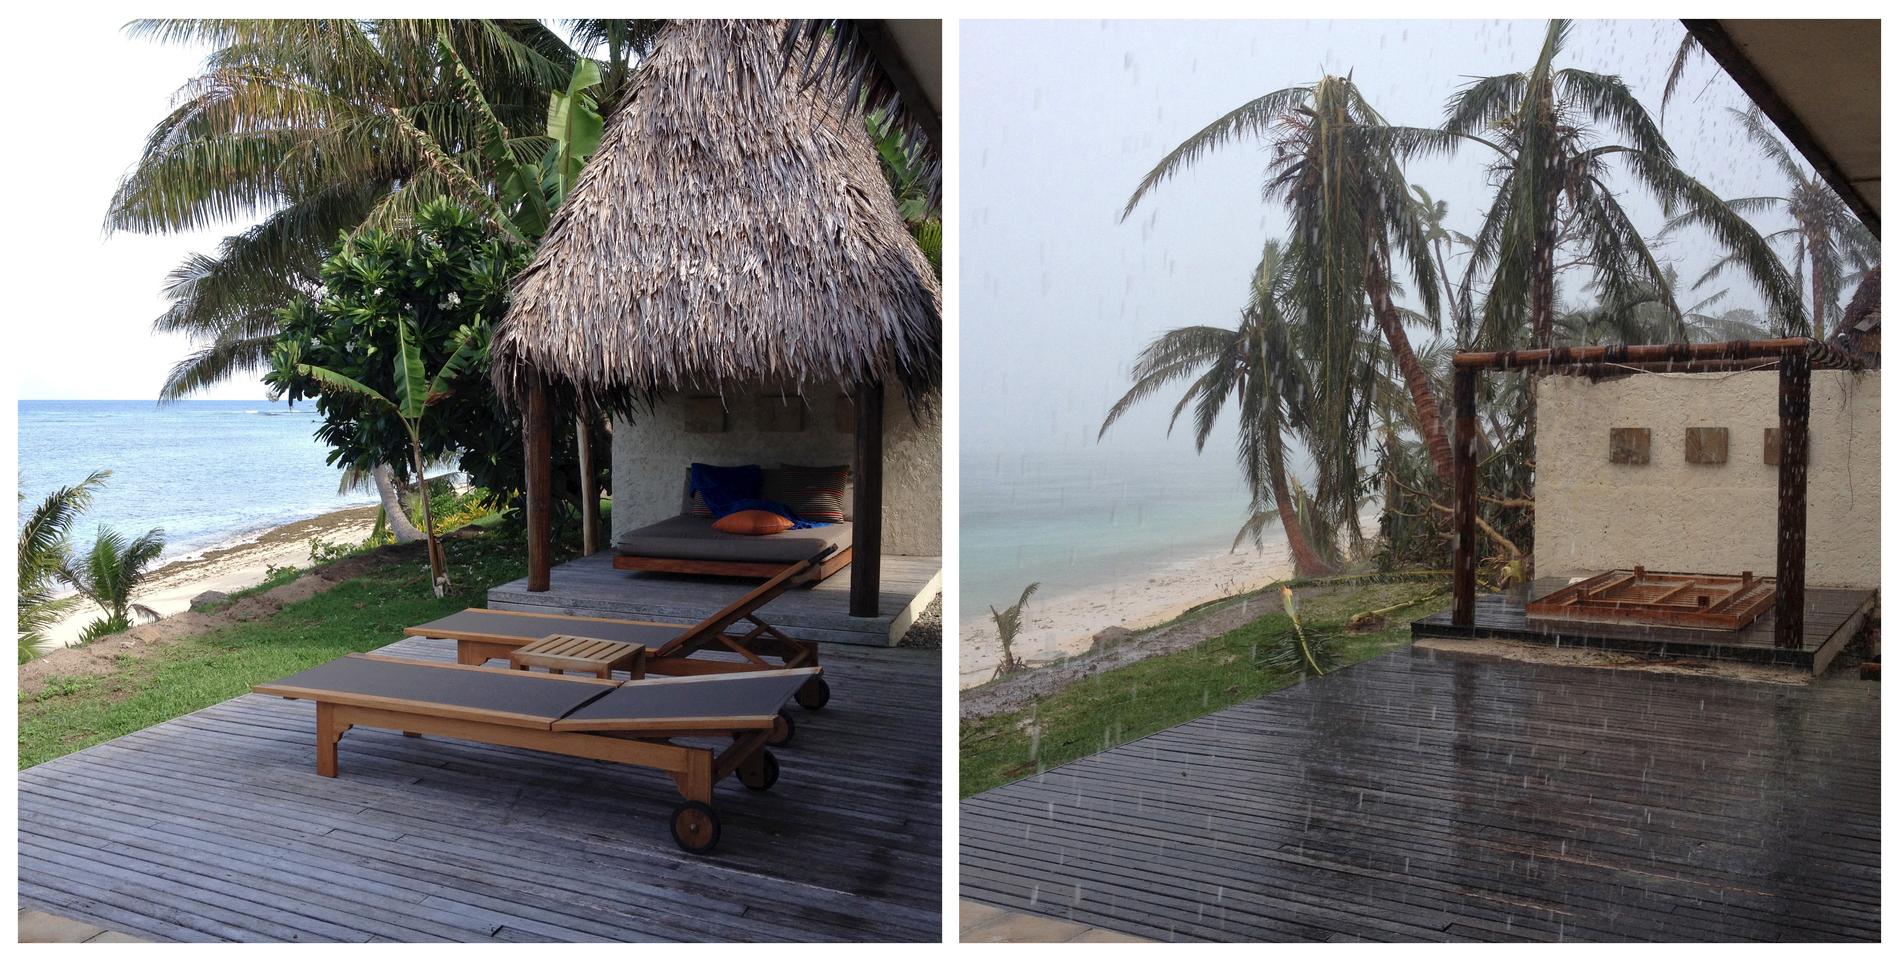 Turisten Sarah Binghams bilder från en turistort på Fiji, före och efter cyklonen Winston.